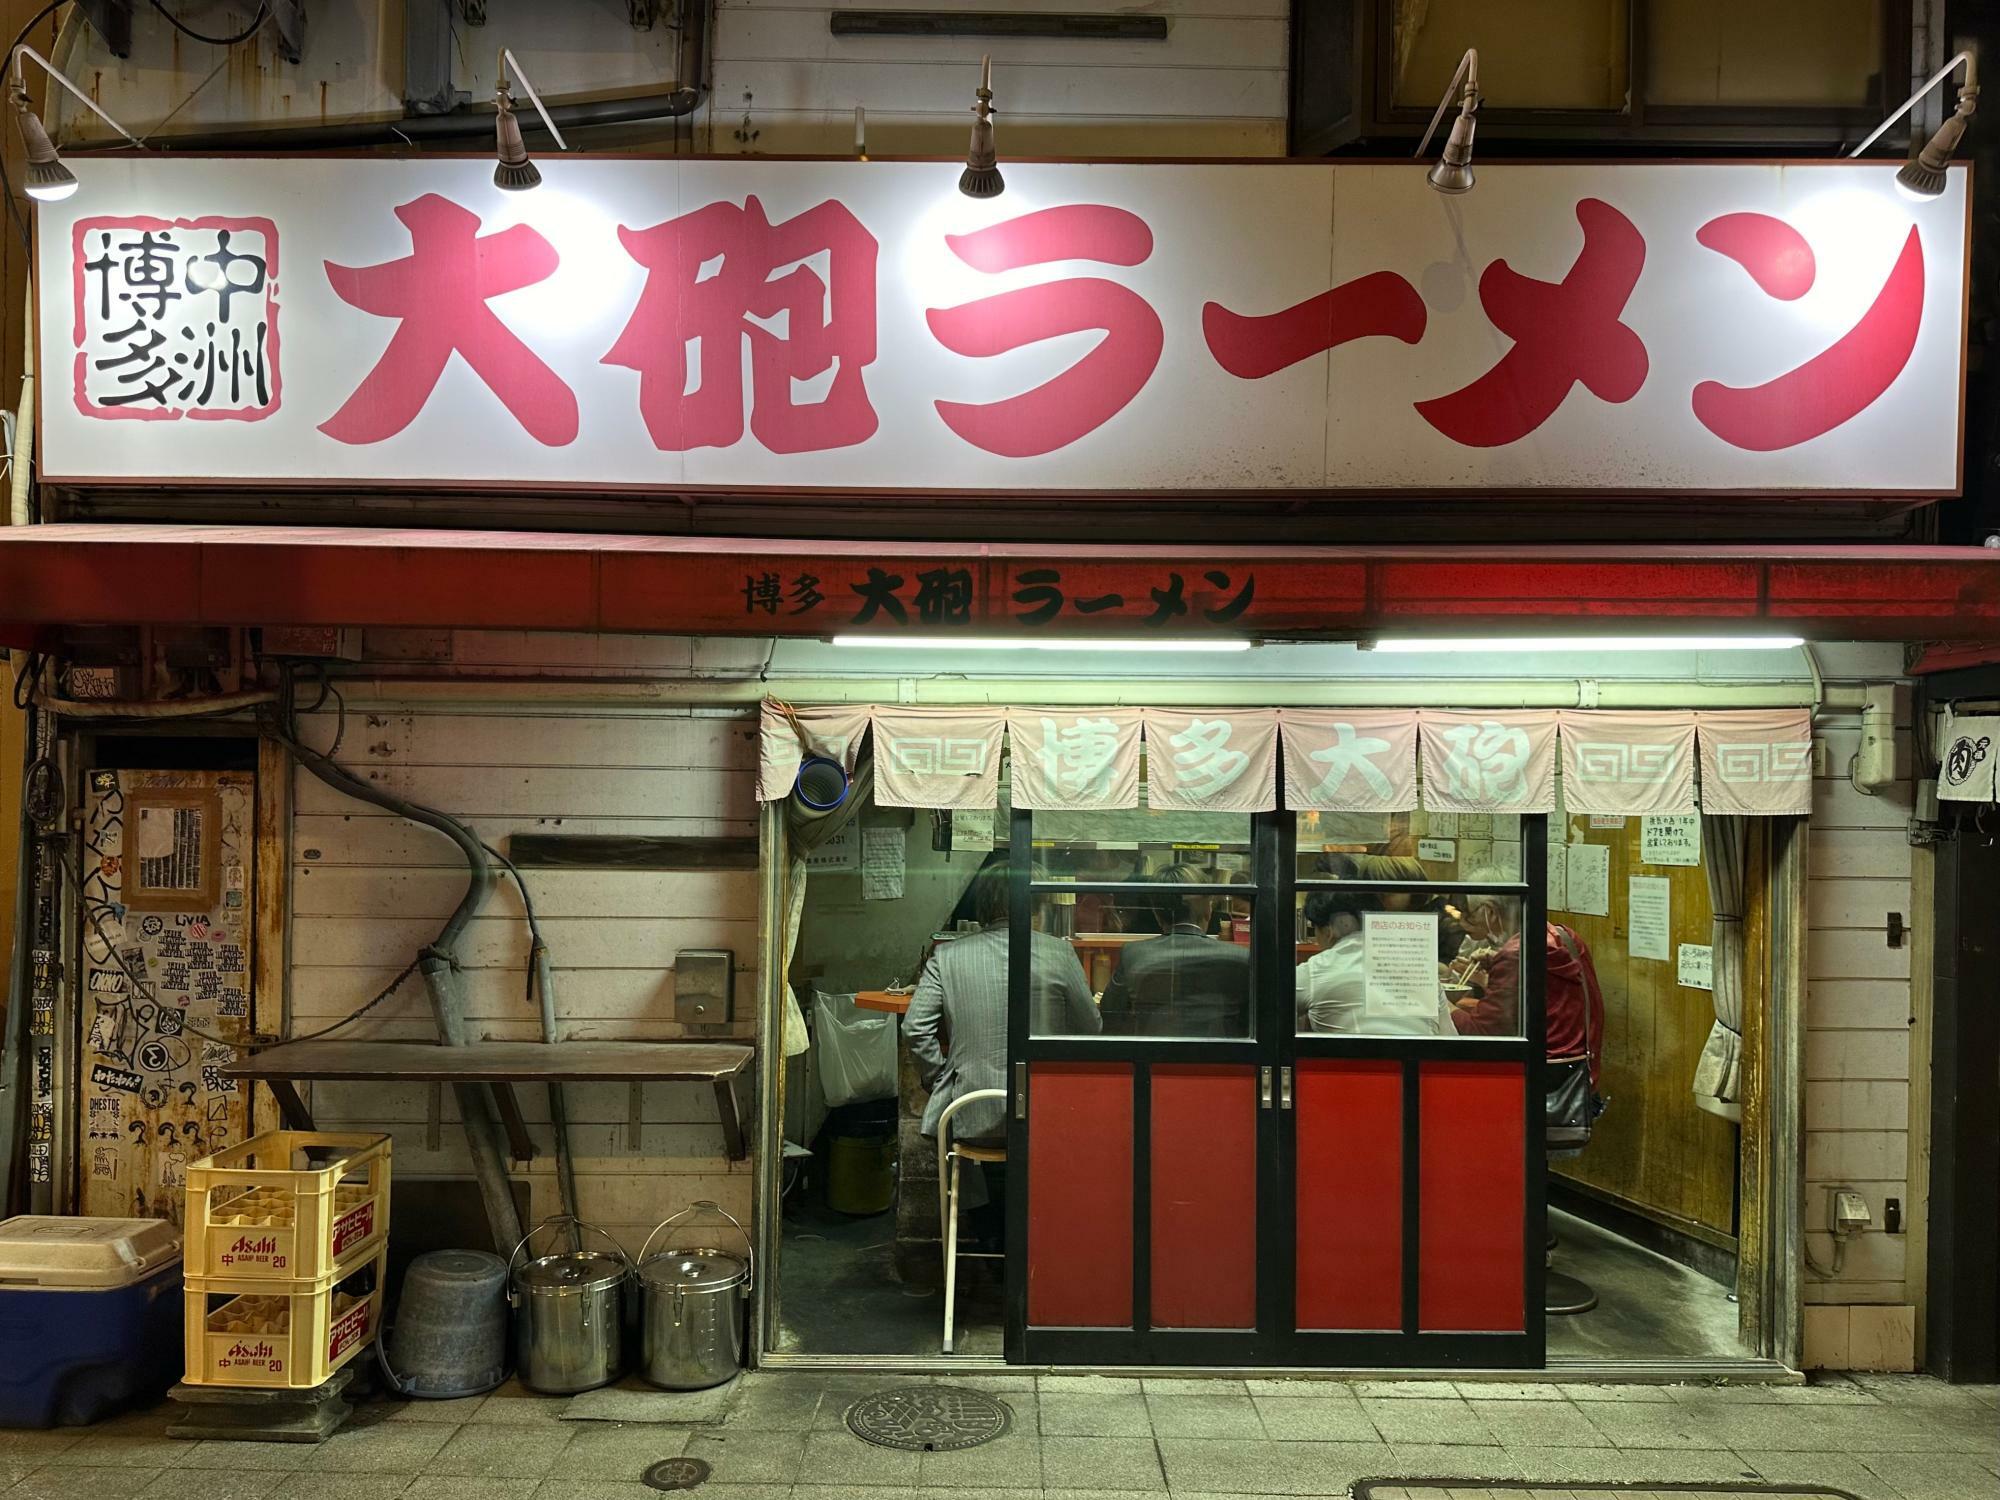 建物の老朽化により5月31日で閉店する『博多大砲ラーメン 本店』。